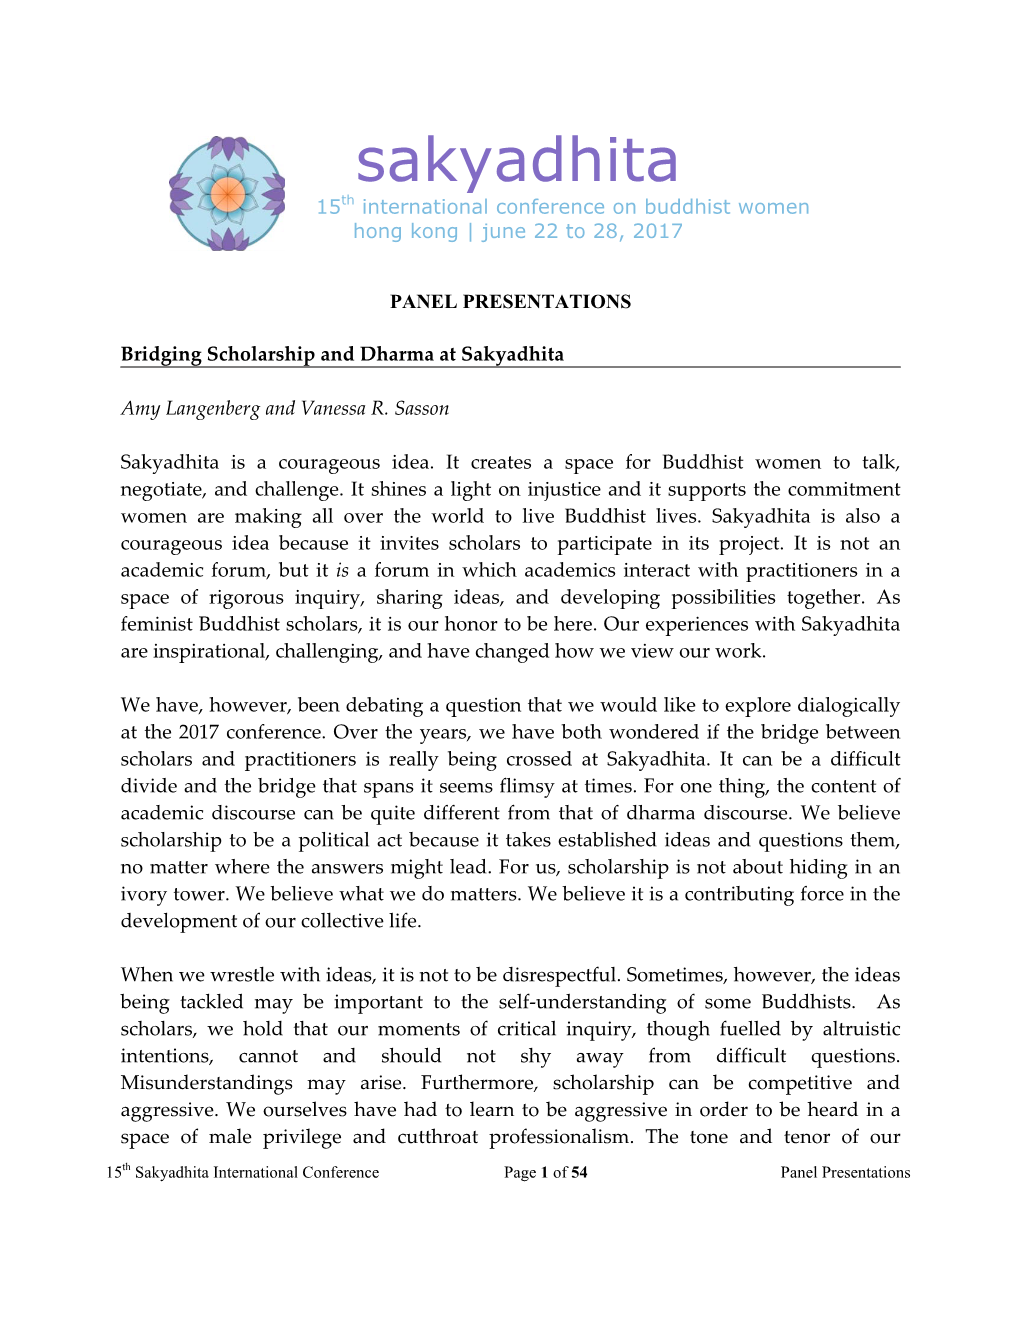 Sakyadhita International Association of Buddhist Women